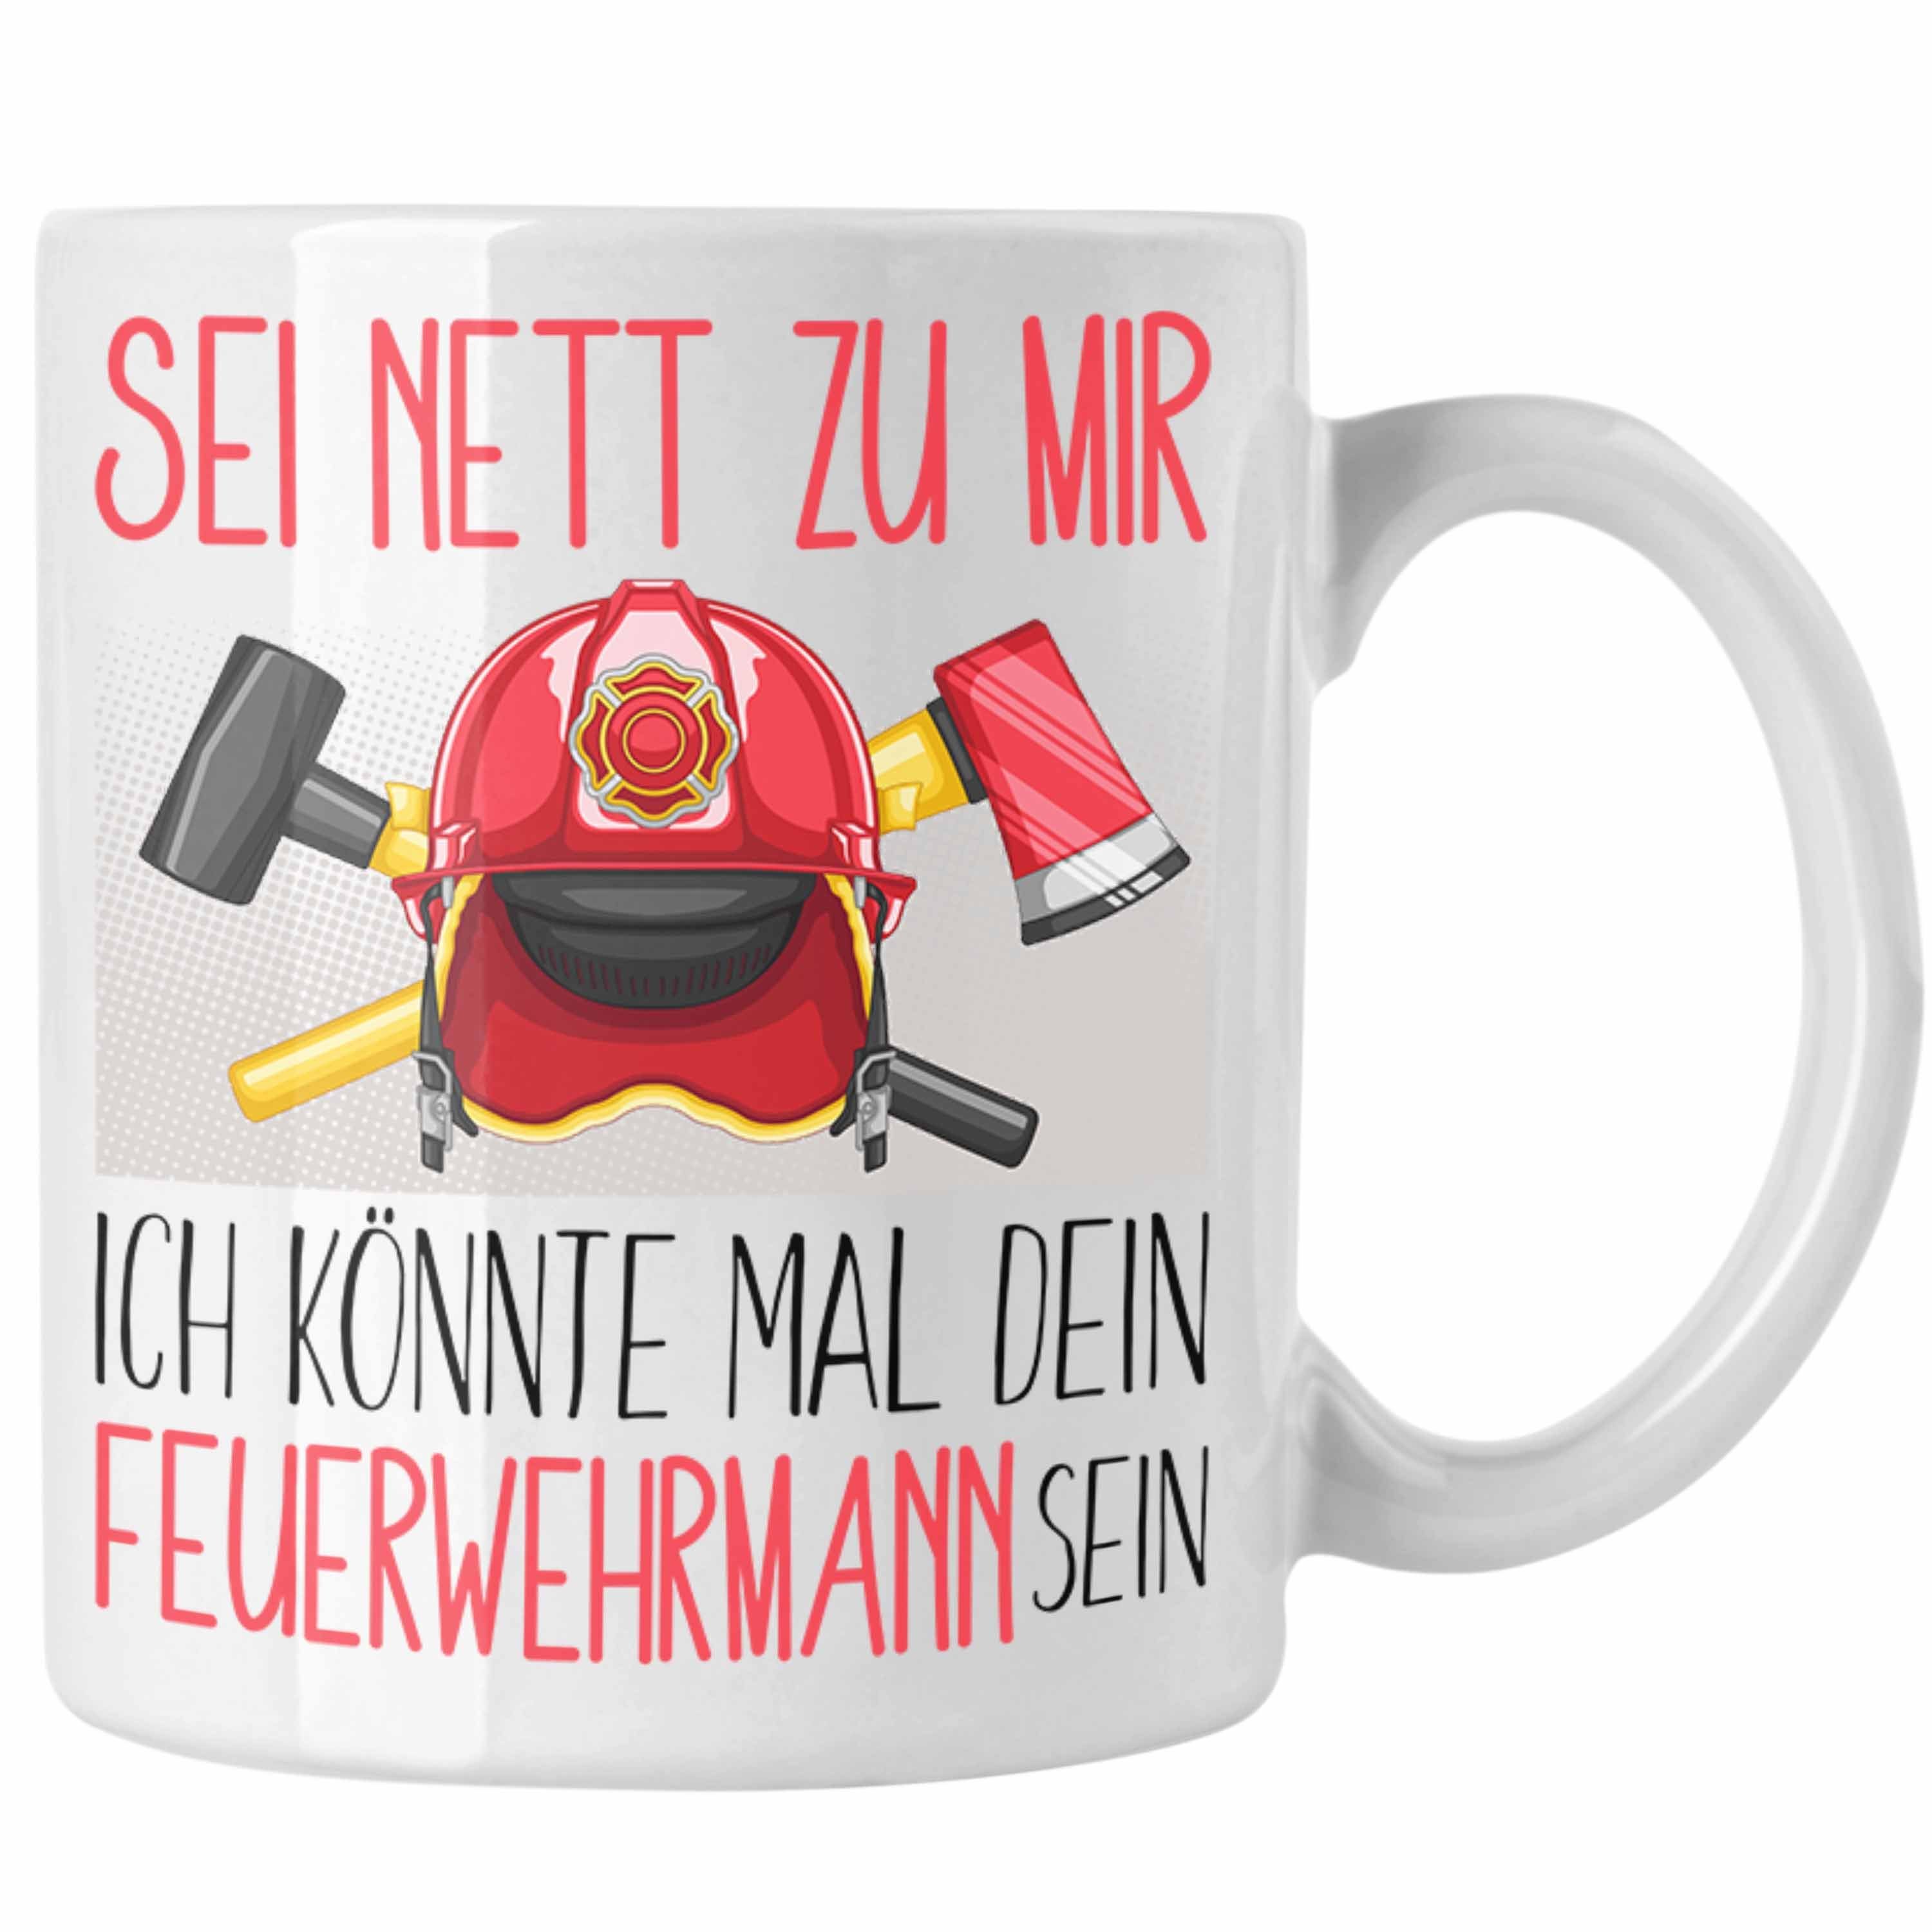 Trendation Tasse Feuerwehrmann Ausbildung Tasse Geschenk Feuerwehr Geschenkidee Sei Net Weiss